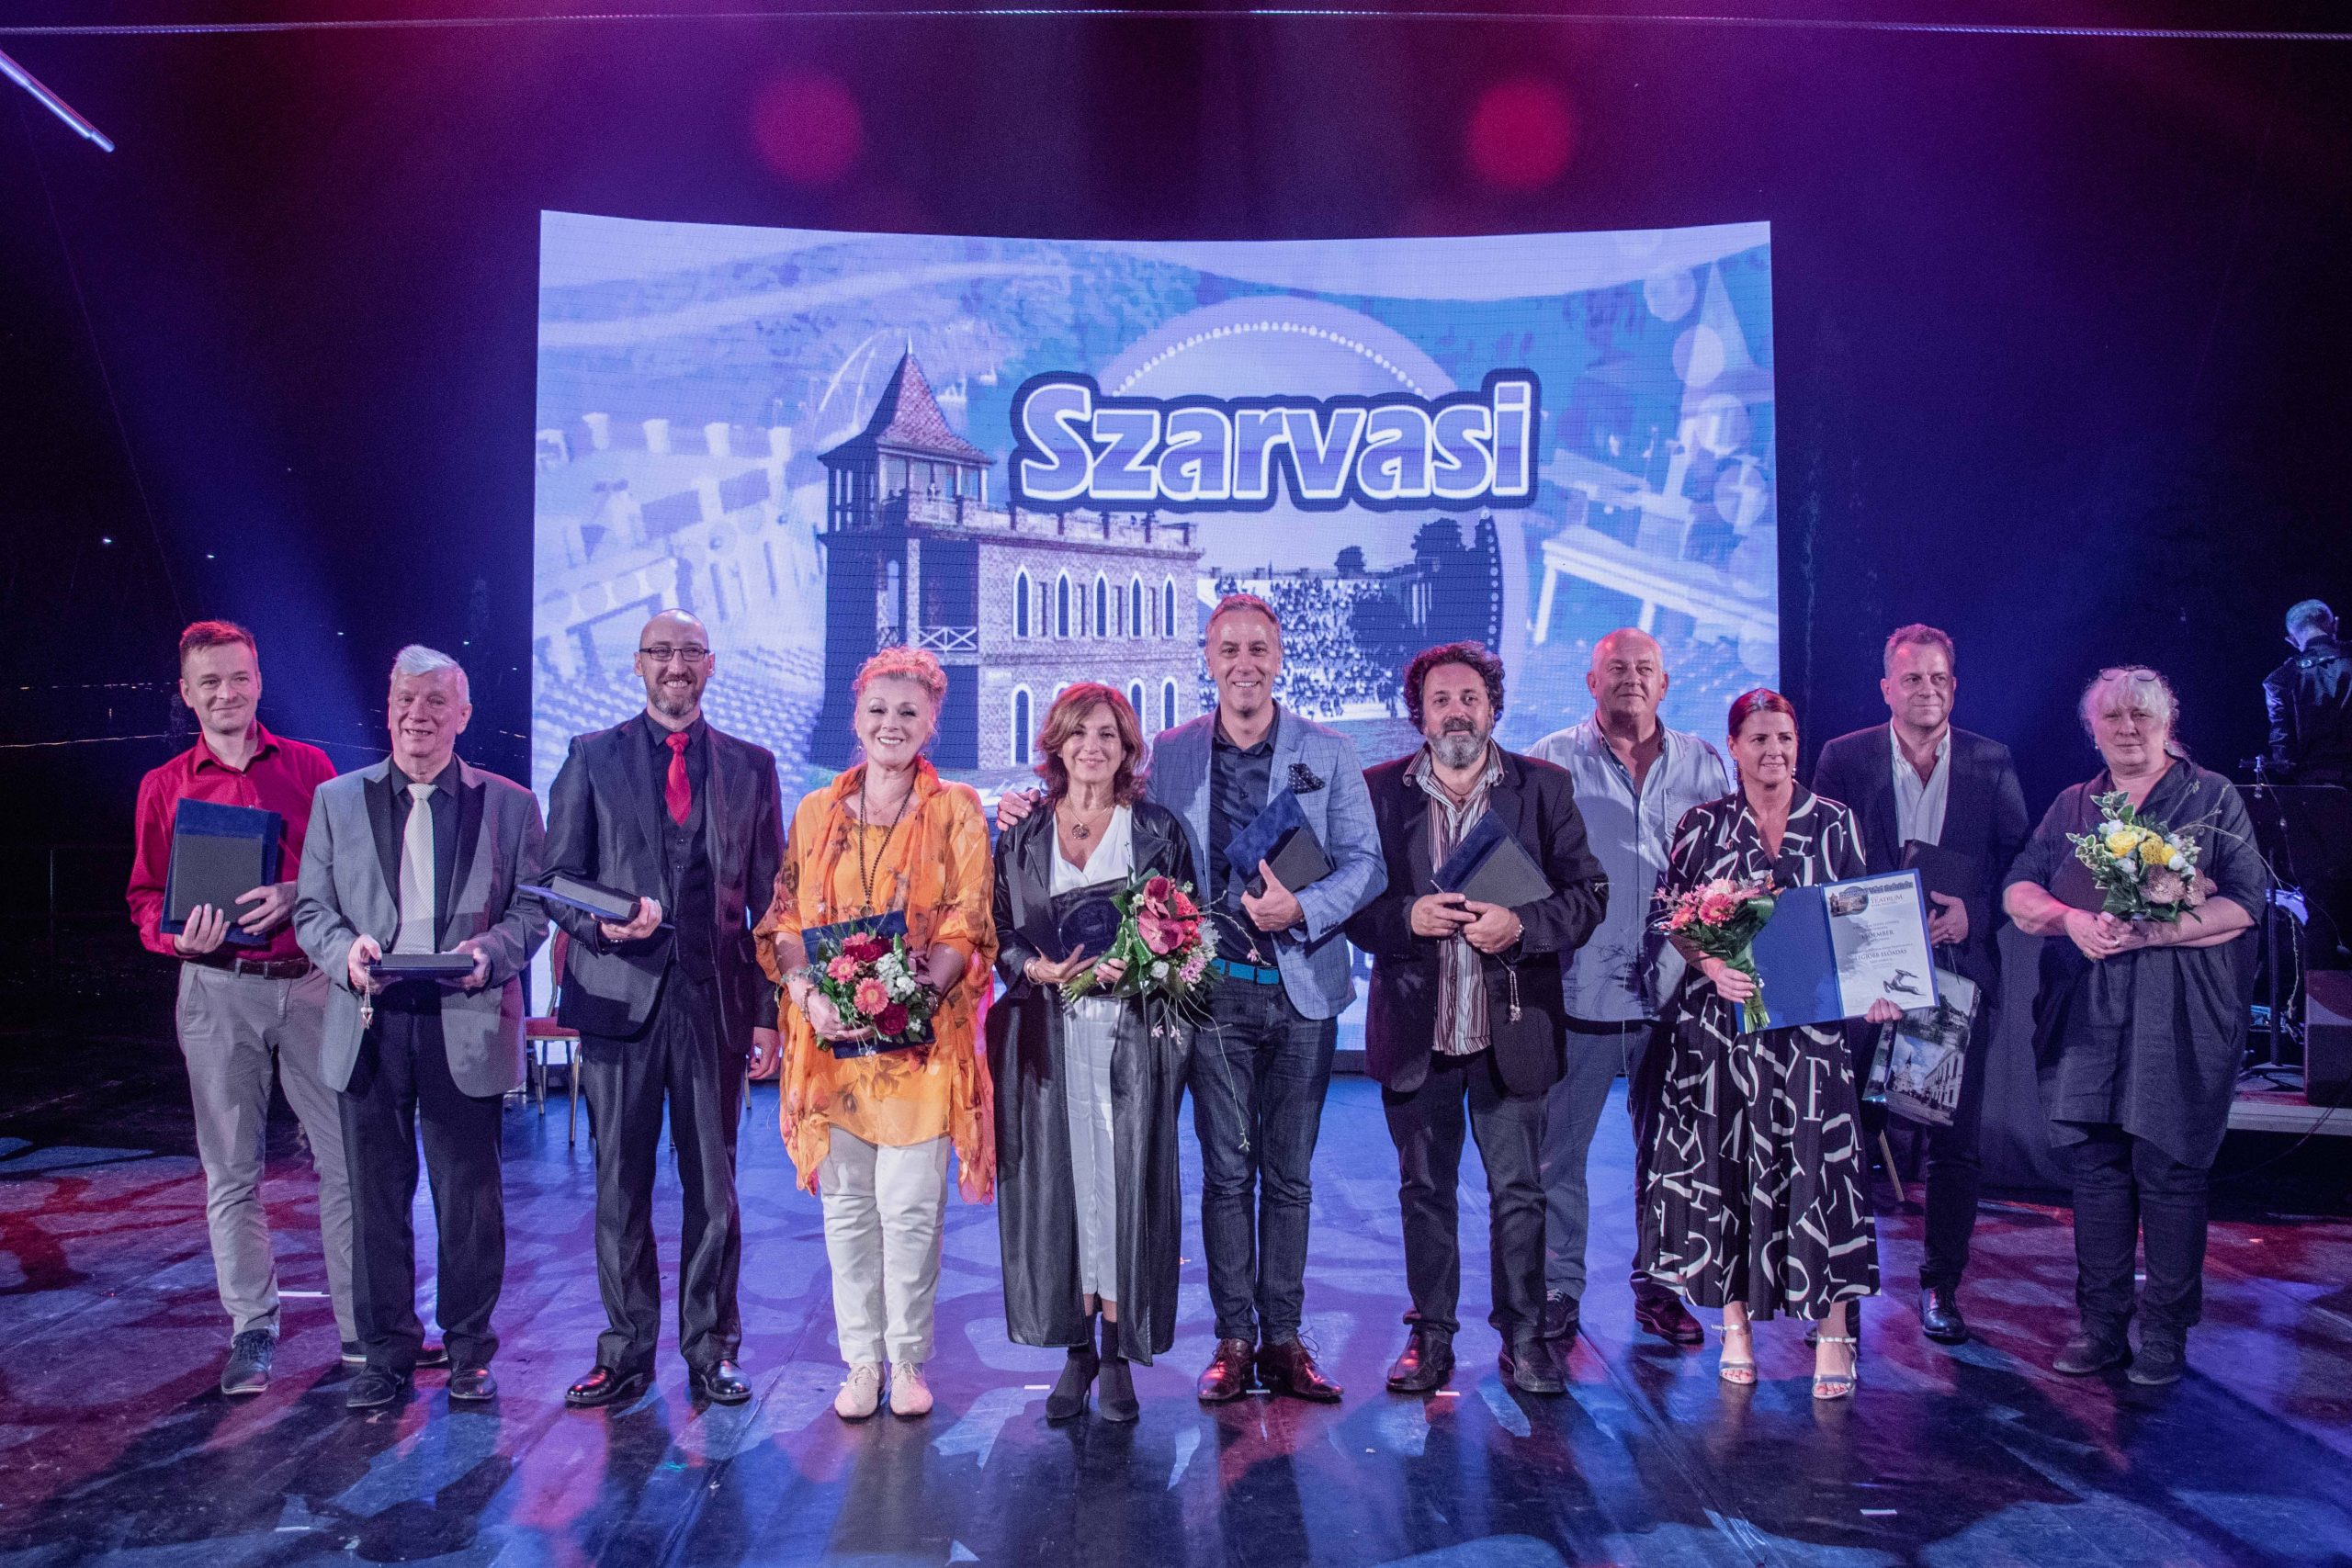 Csonka András, Vándor Éva és Szente Vajk is díjat kapott a Magyar Teátrum nyári fesztiválzáró gáláján